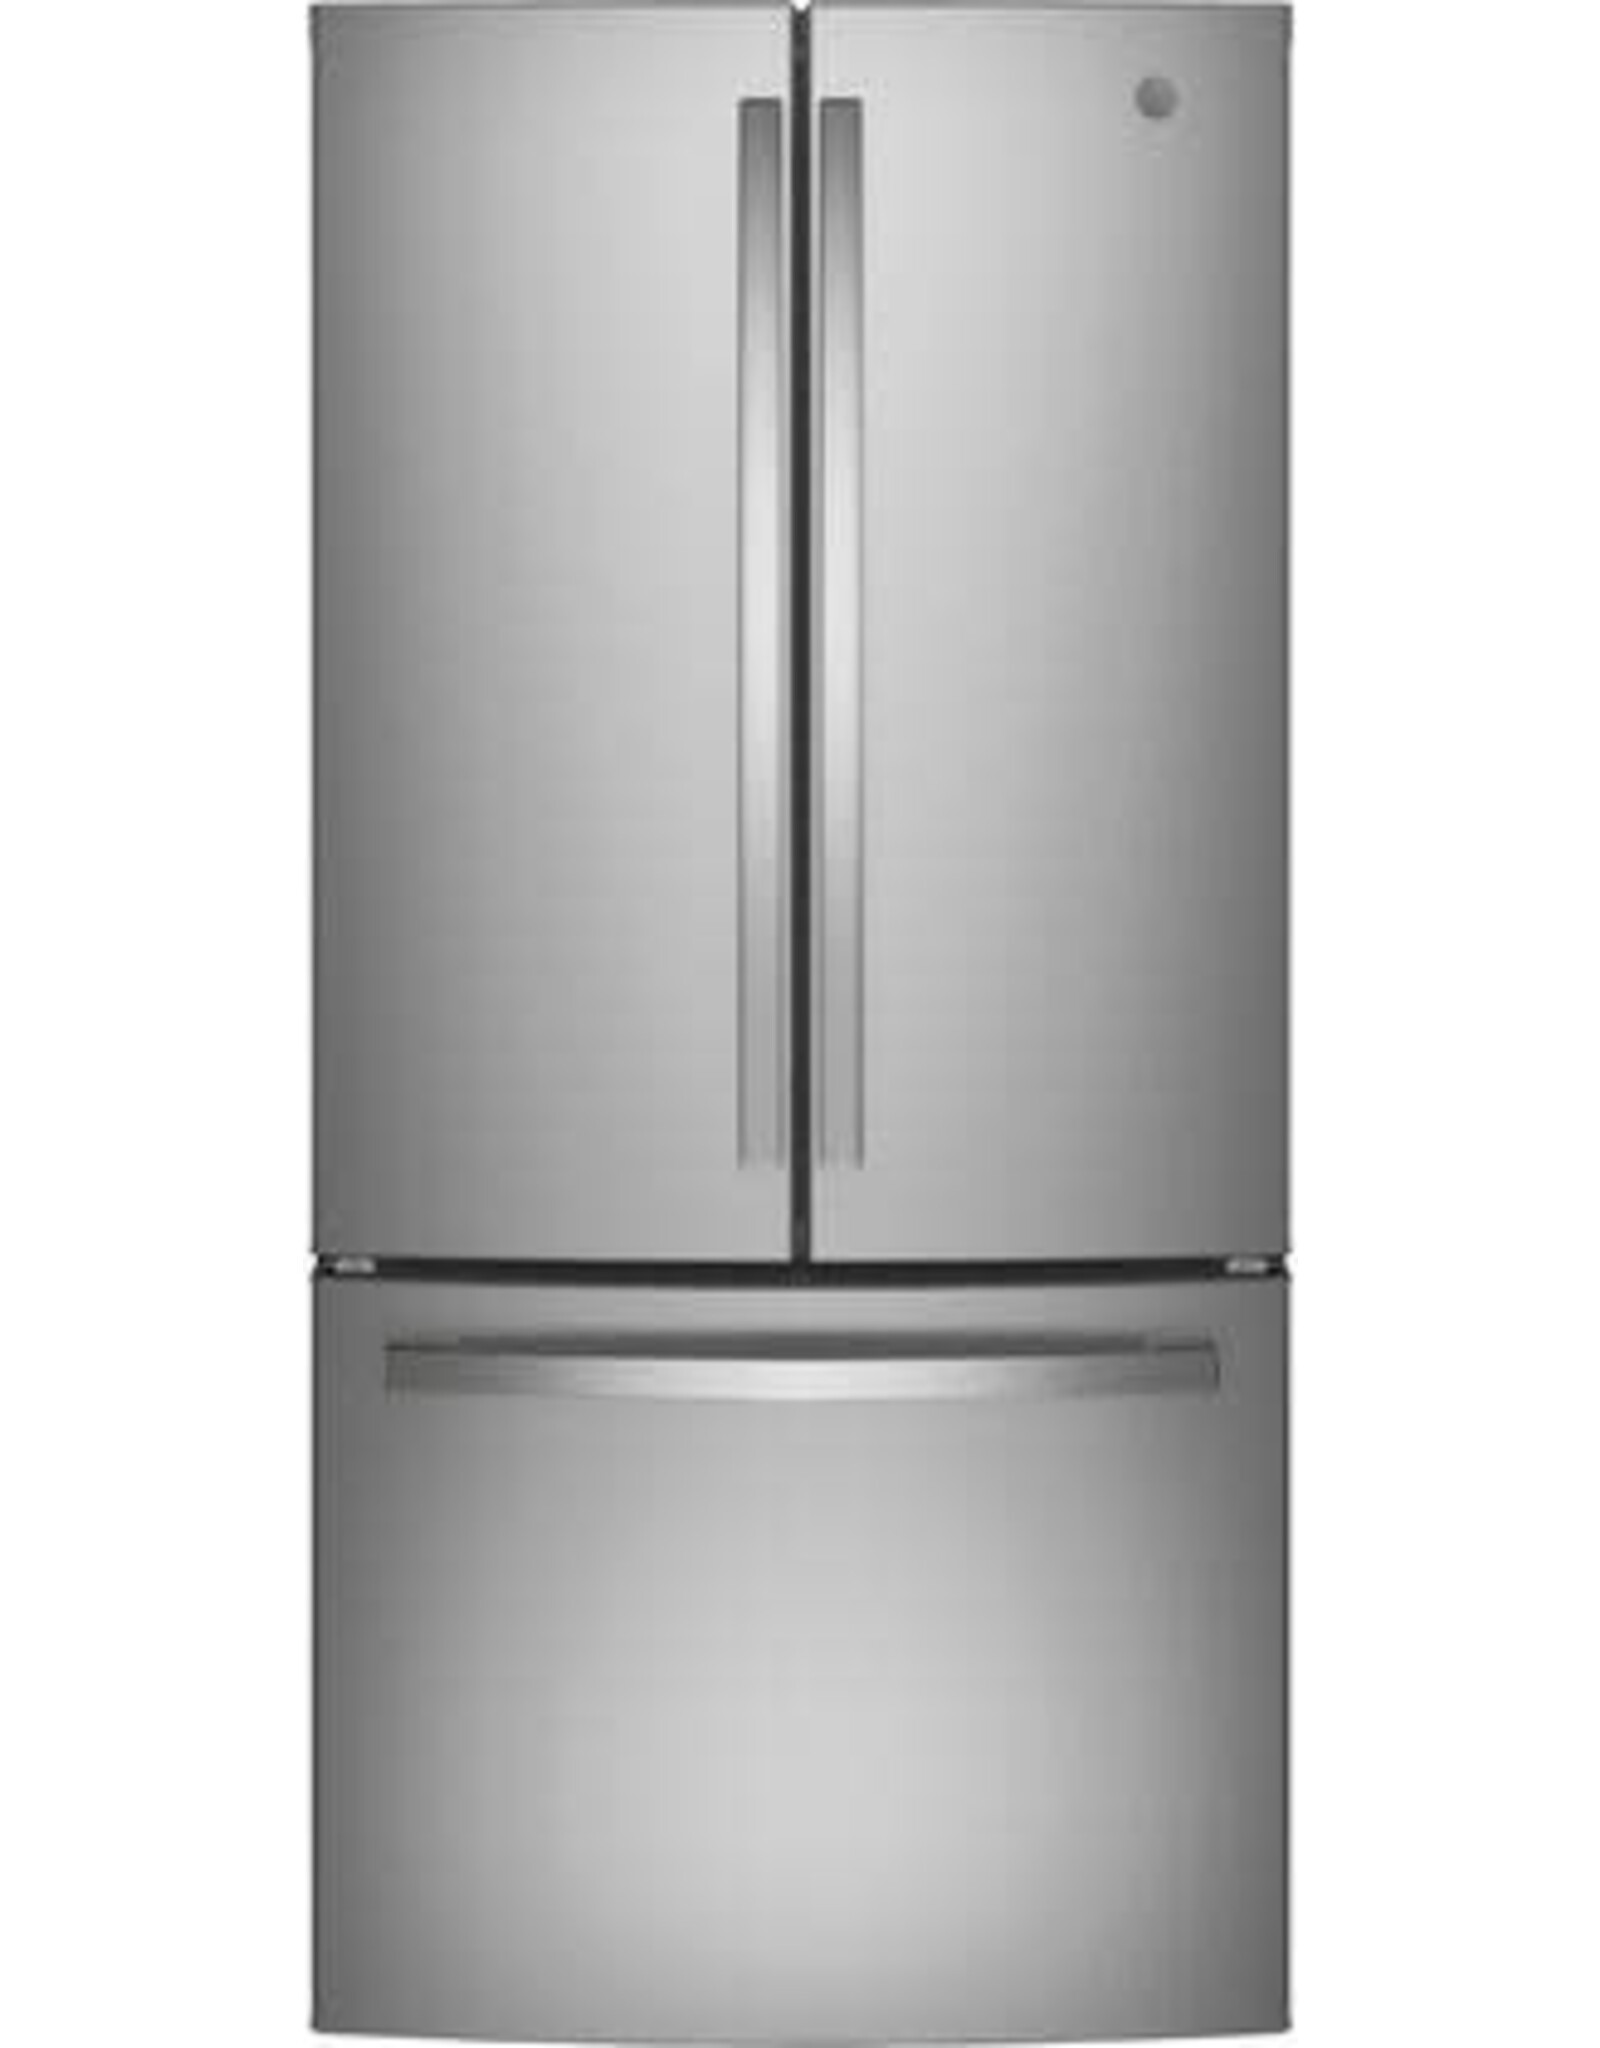 GE GNE25JYKFS 24.7 cu. ft. French Door Refrigerator in Fingerprint Resistant Stainless Steel, ENERGY STAR